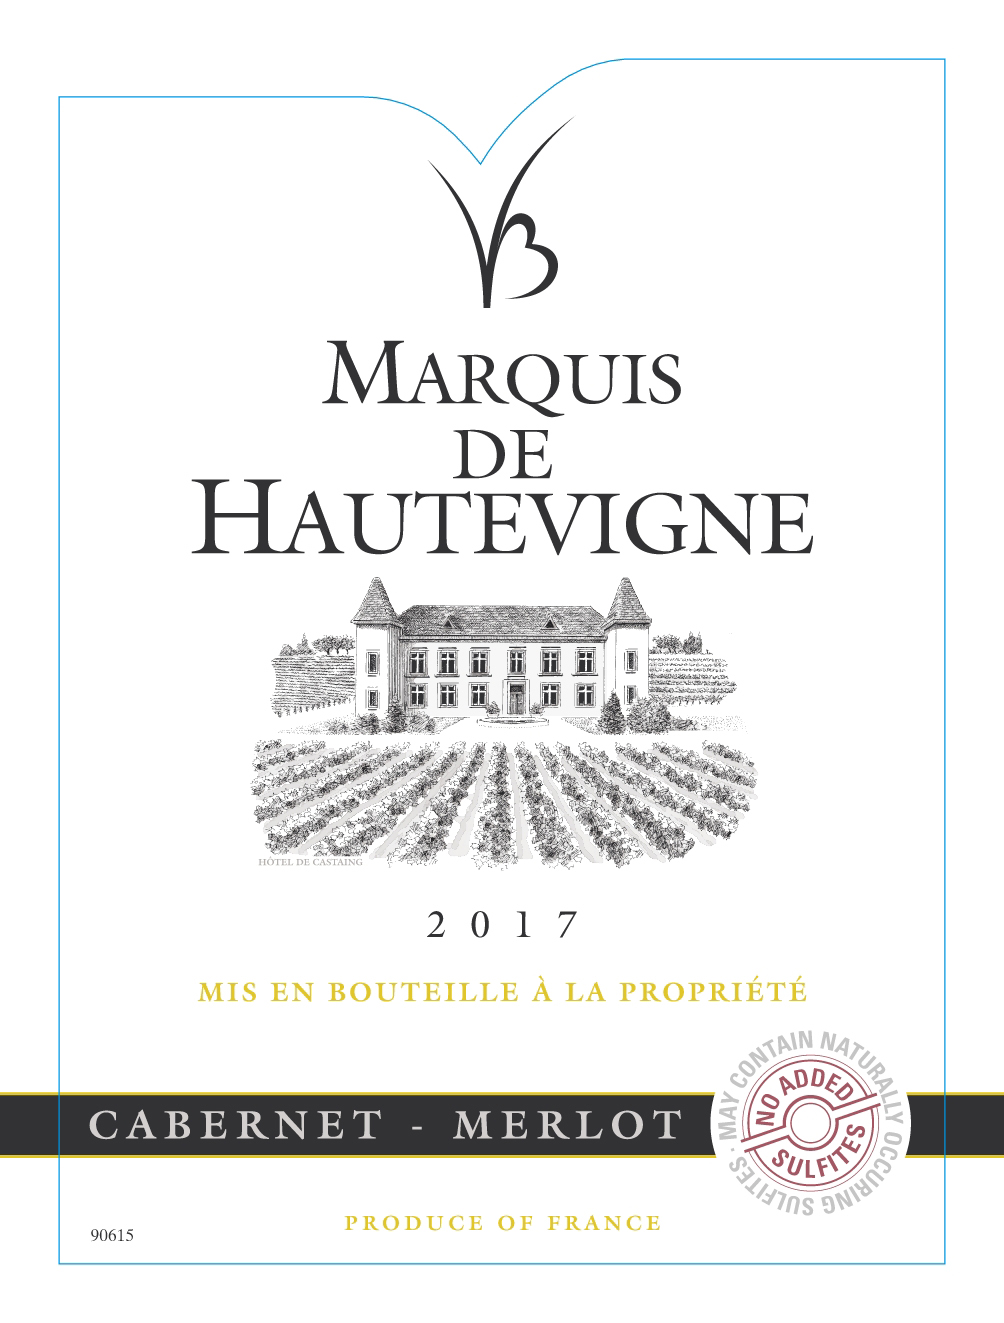 Marquis de Hautevigne - Buzet - Cabernet-Merlot label